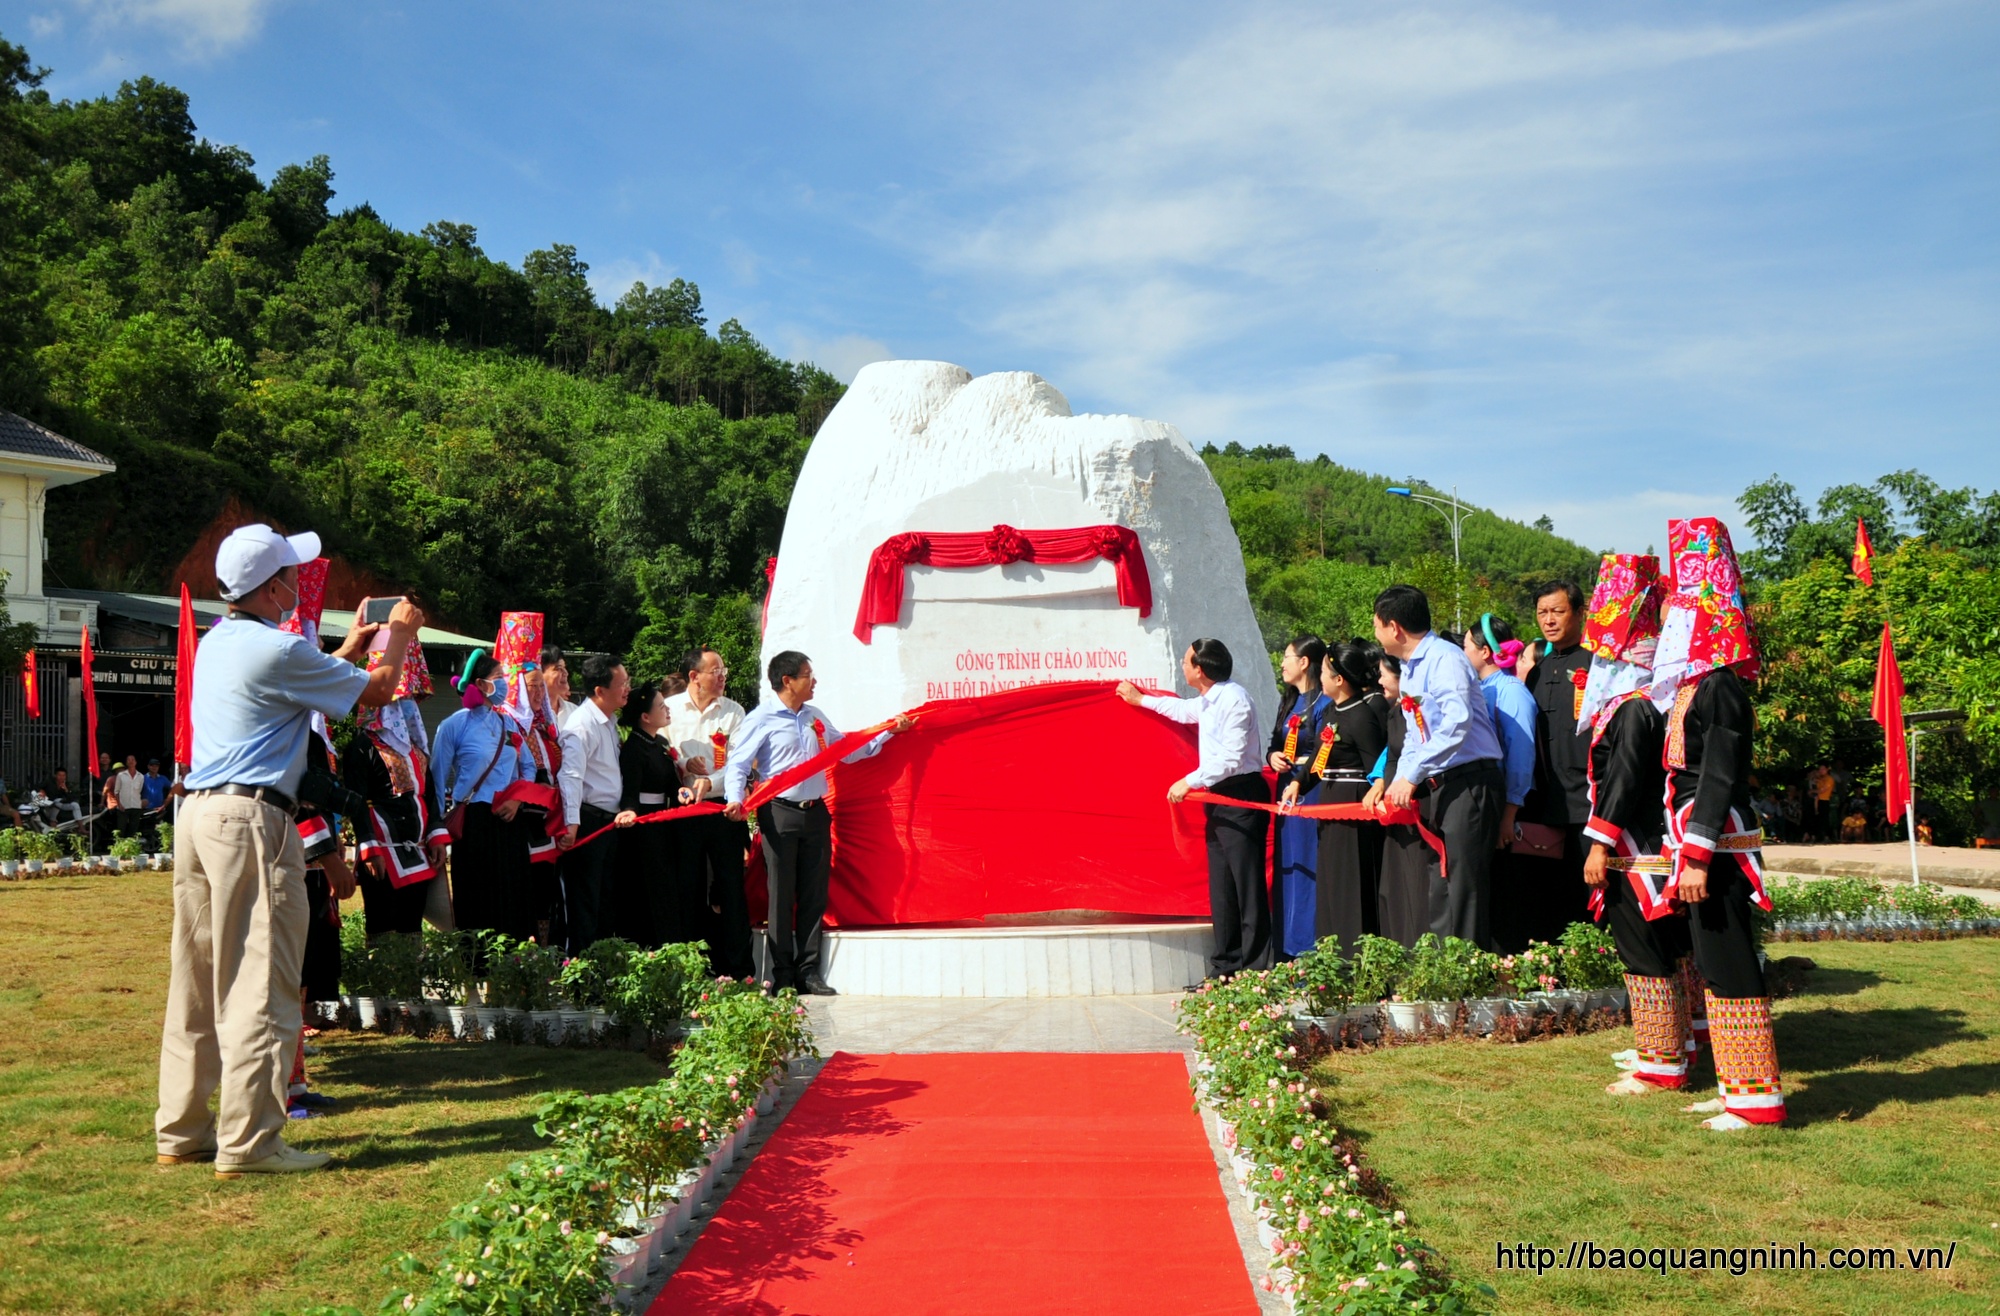  Các đại biểu thực hiện nghi lễ kéo băng đỏ gắn biển công trình chào mừng Đại hội Đảng bộ tỉnh Quảng Ninh lần thứ XV.